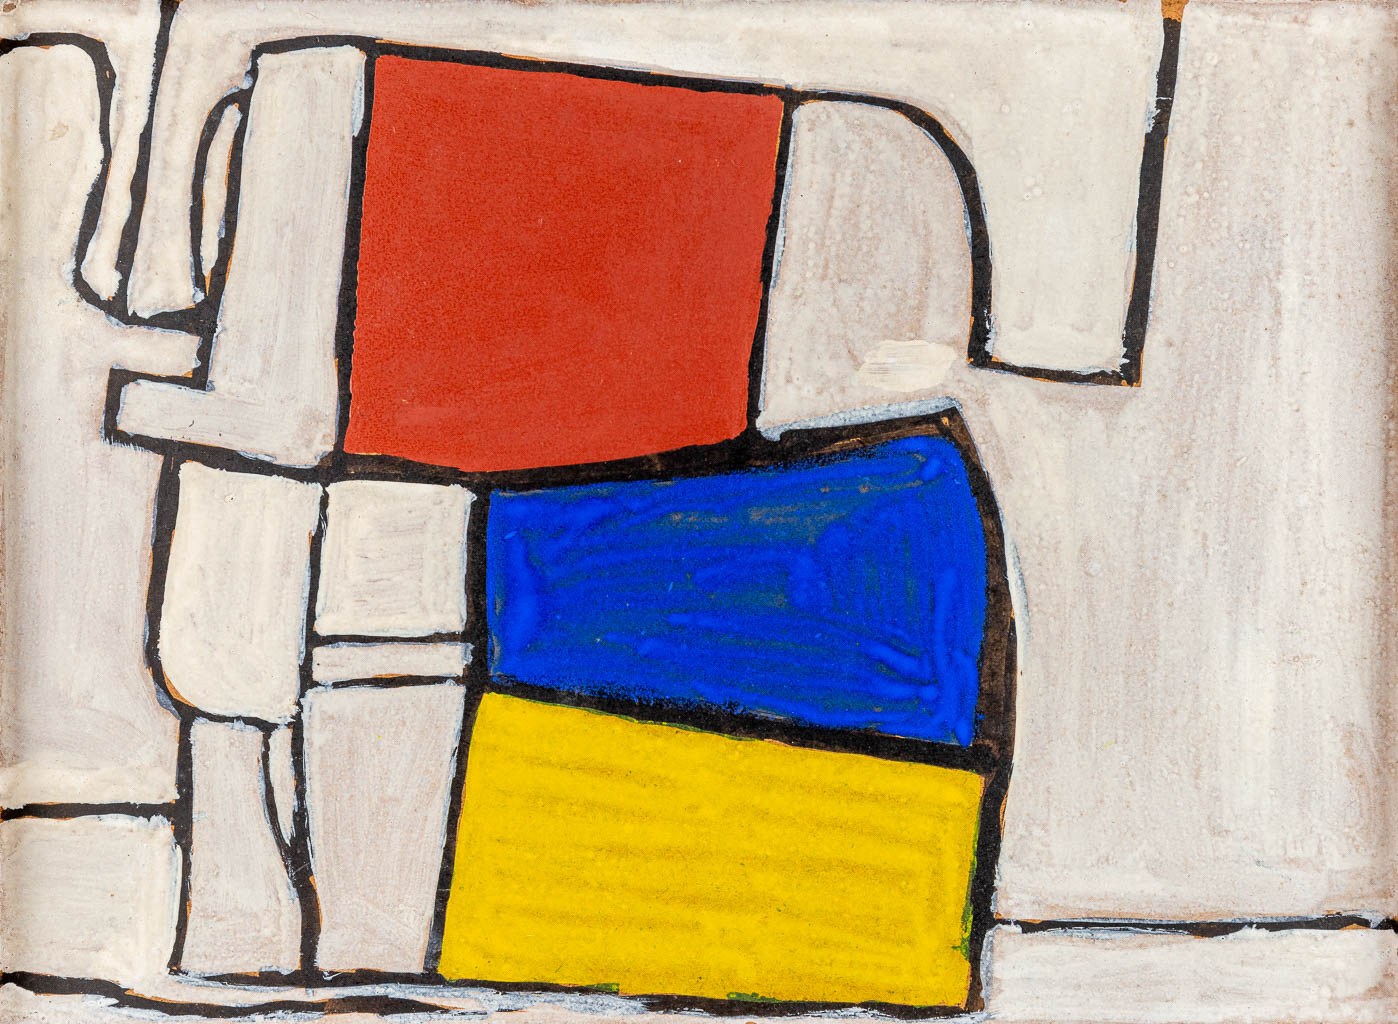  Mario DE BRABANDERE (1963) 'Stilleven met houten blokken' oil on panel. 1999